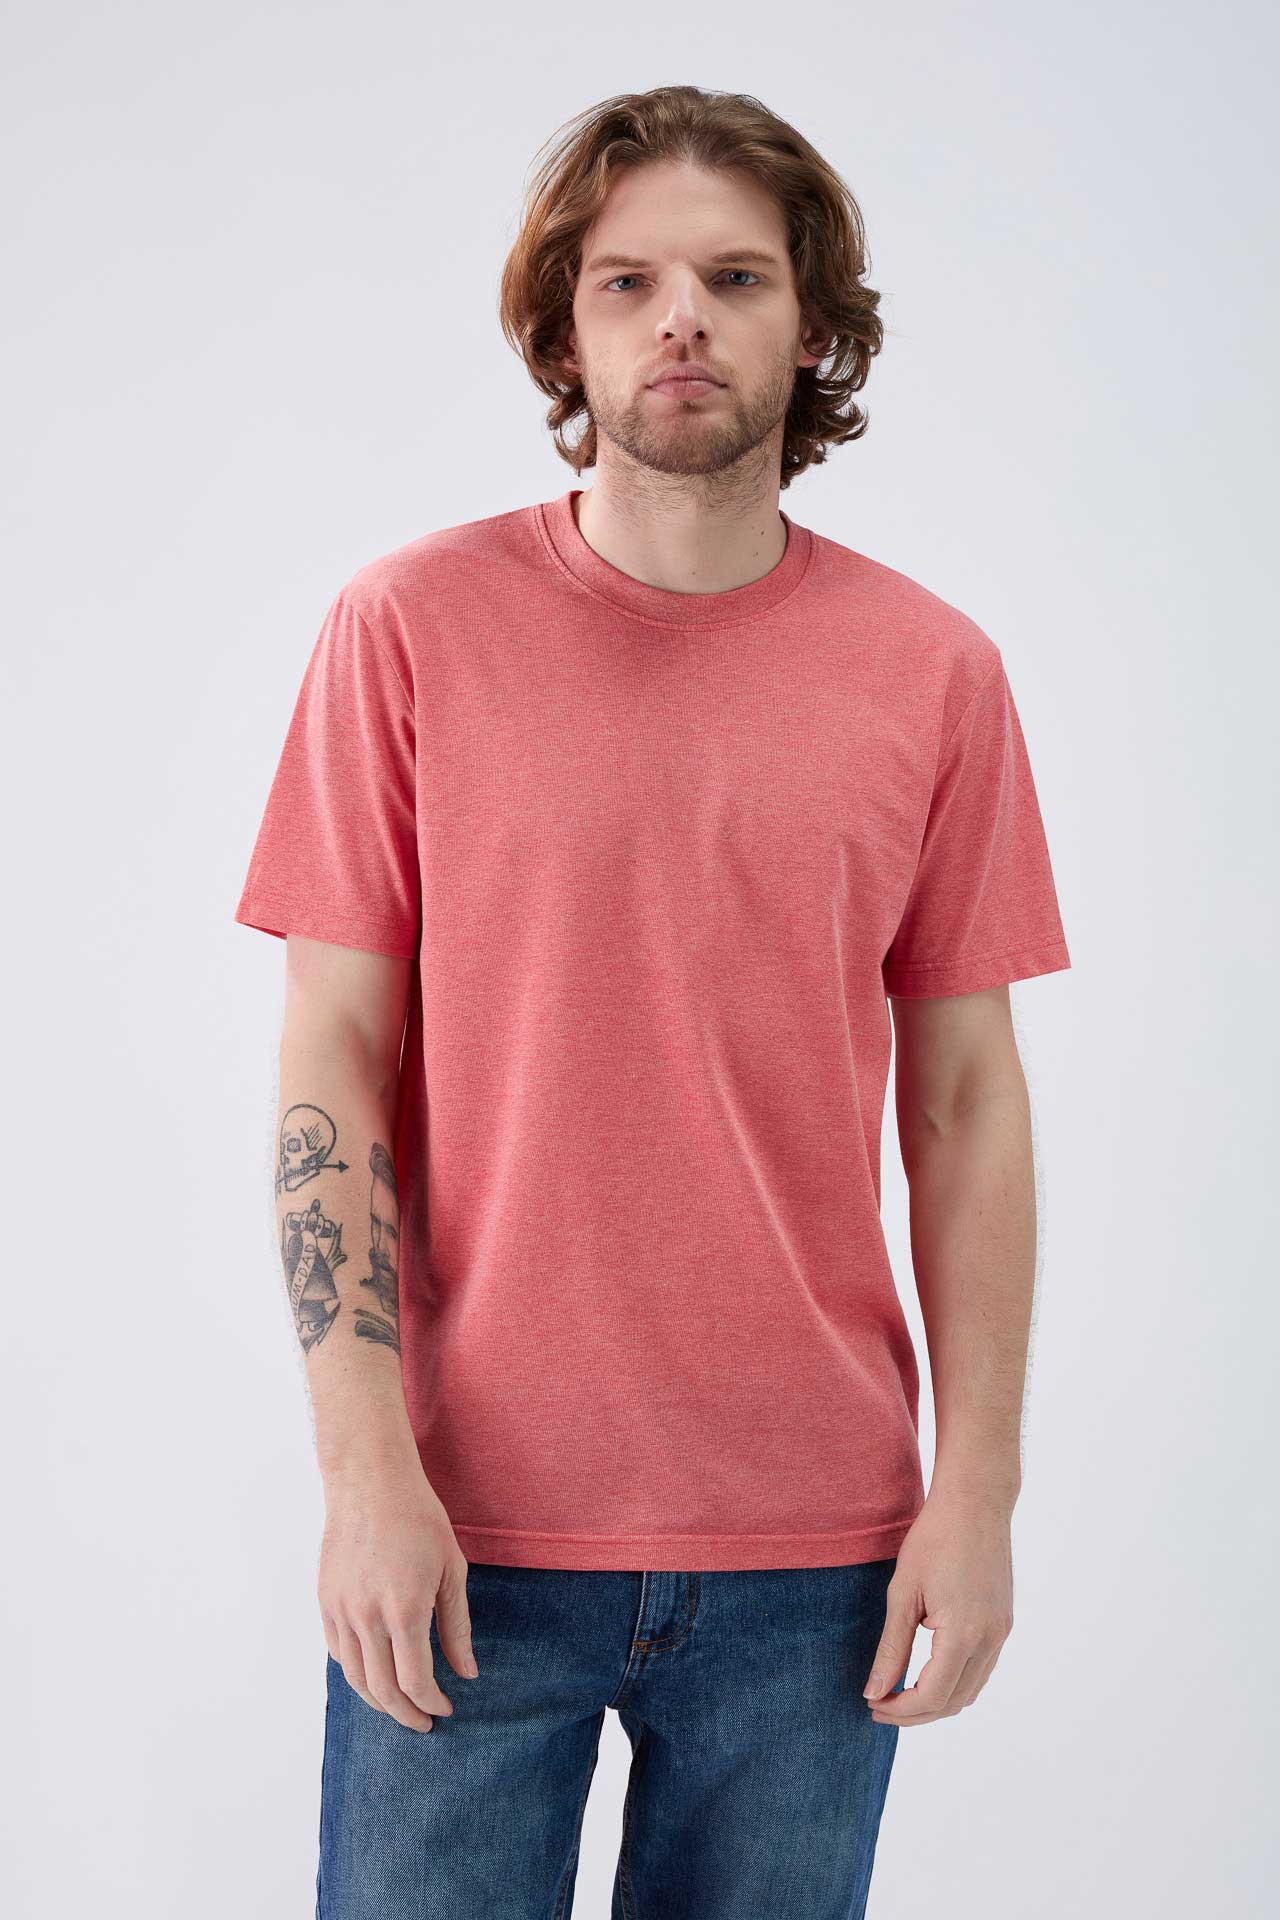 160/325 - T-shirt Homem RCotton